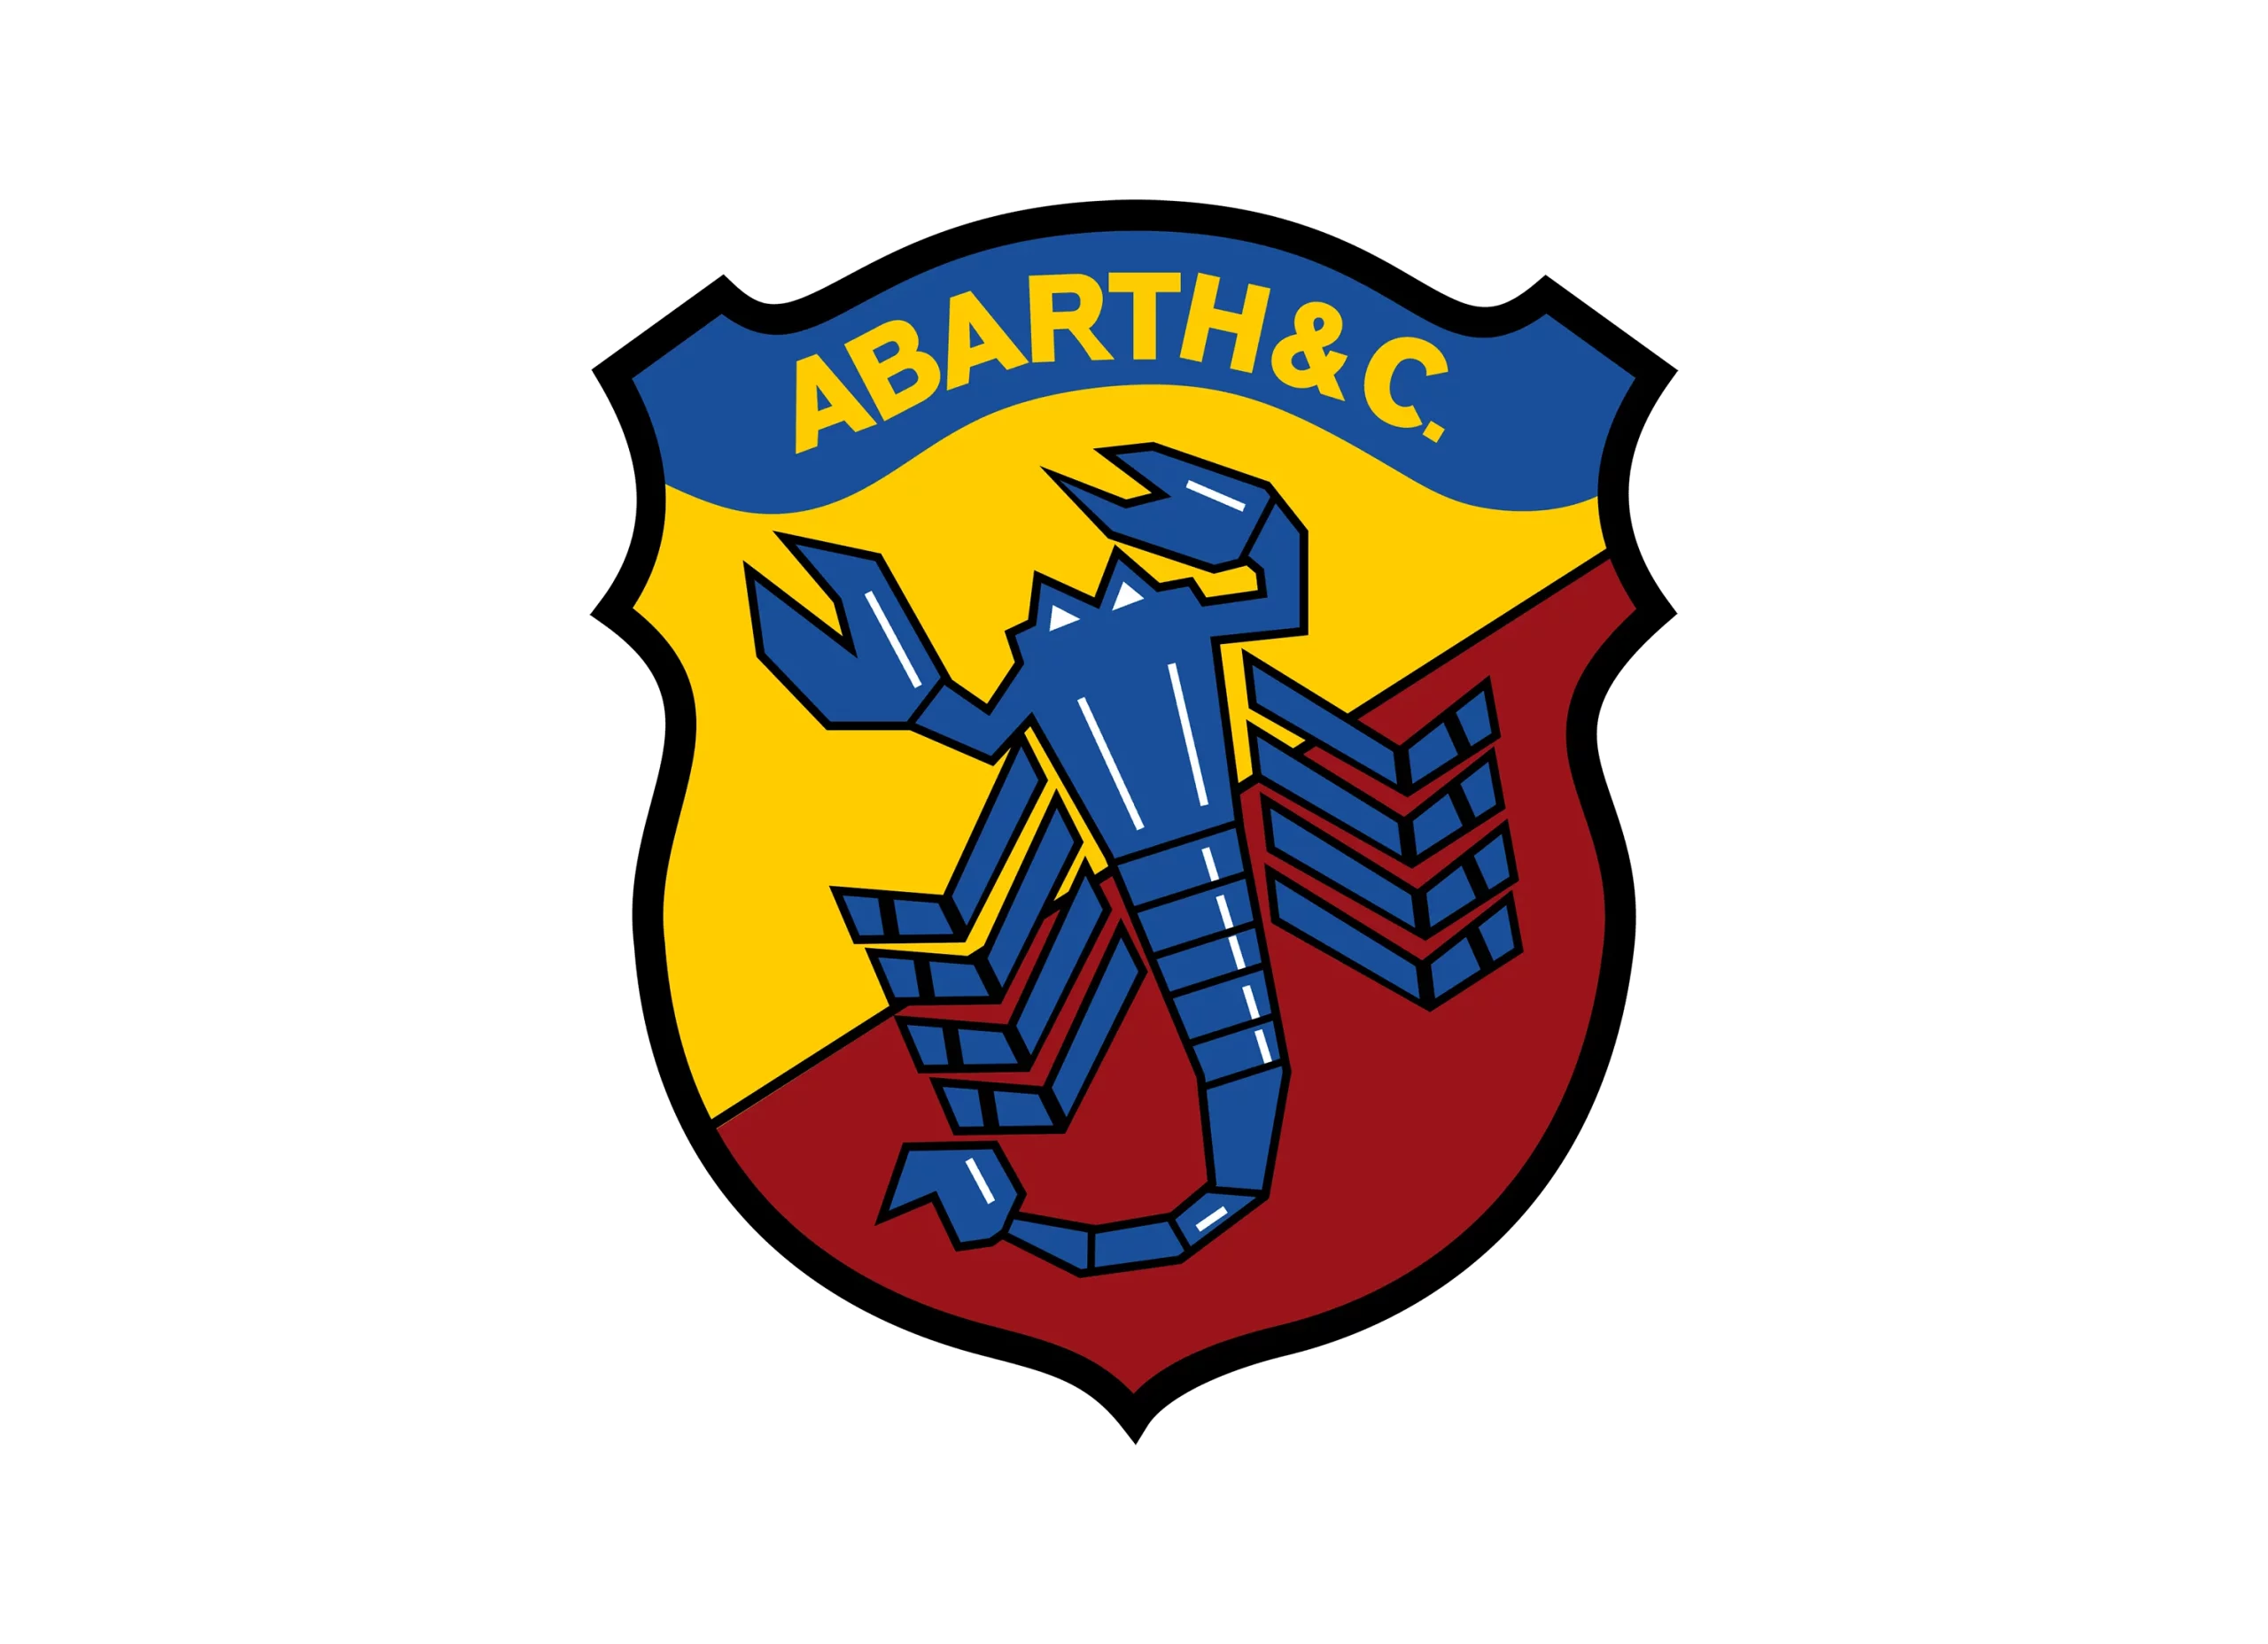 Abarth logo 1958